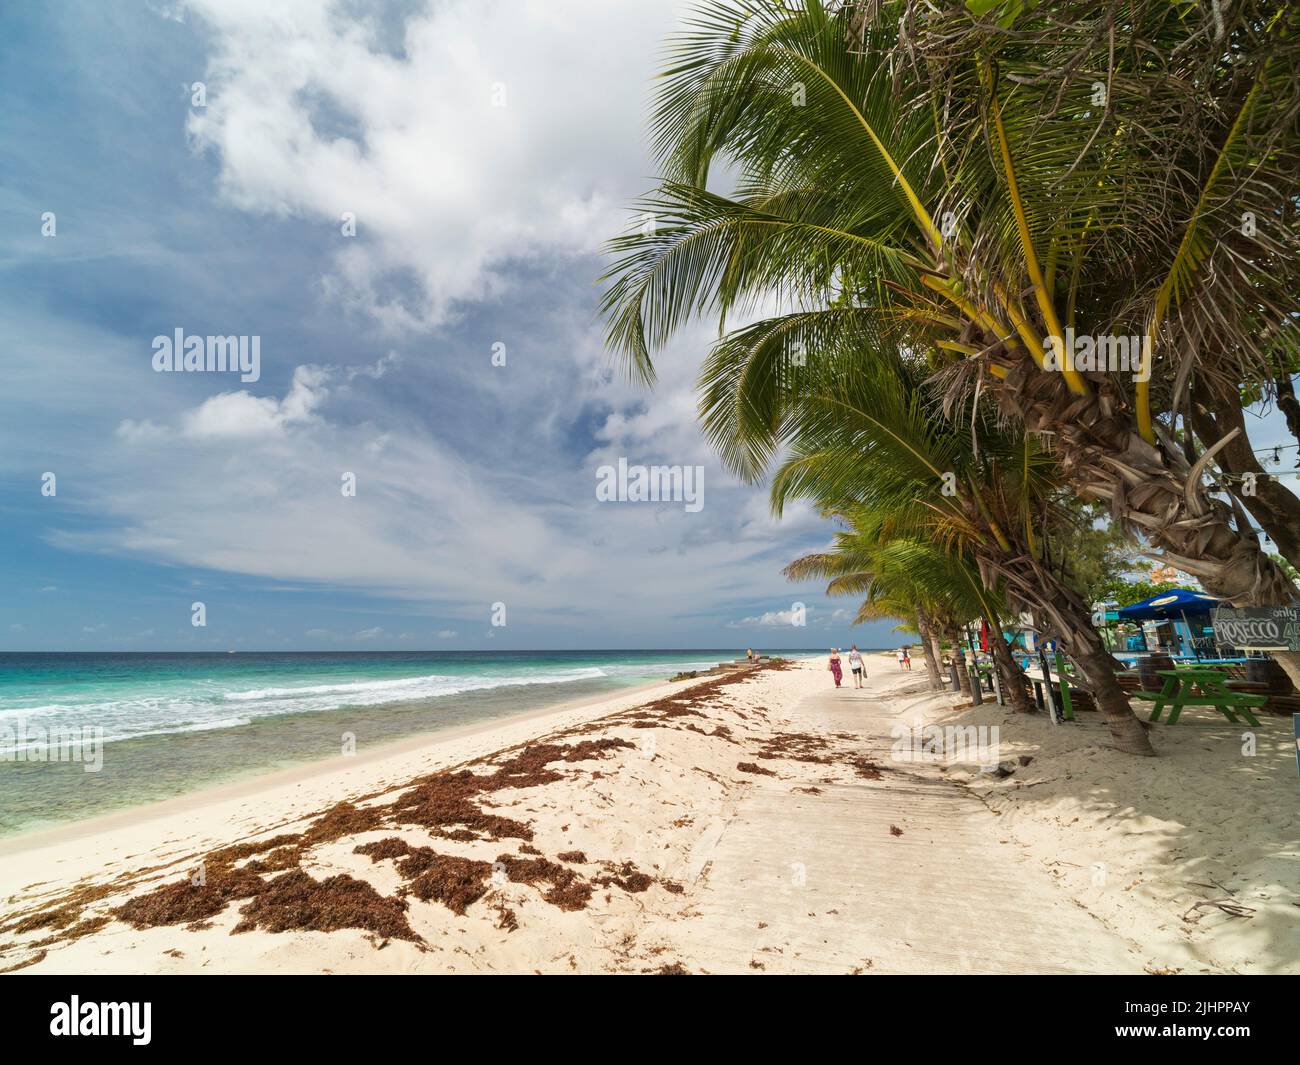 Barbados, isla caribeña - costa oeste. El paseo marítimo de Sir Richard Haynes, Hastings. Sección cubierta en arena. Foto de stock